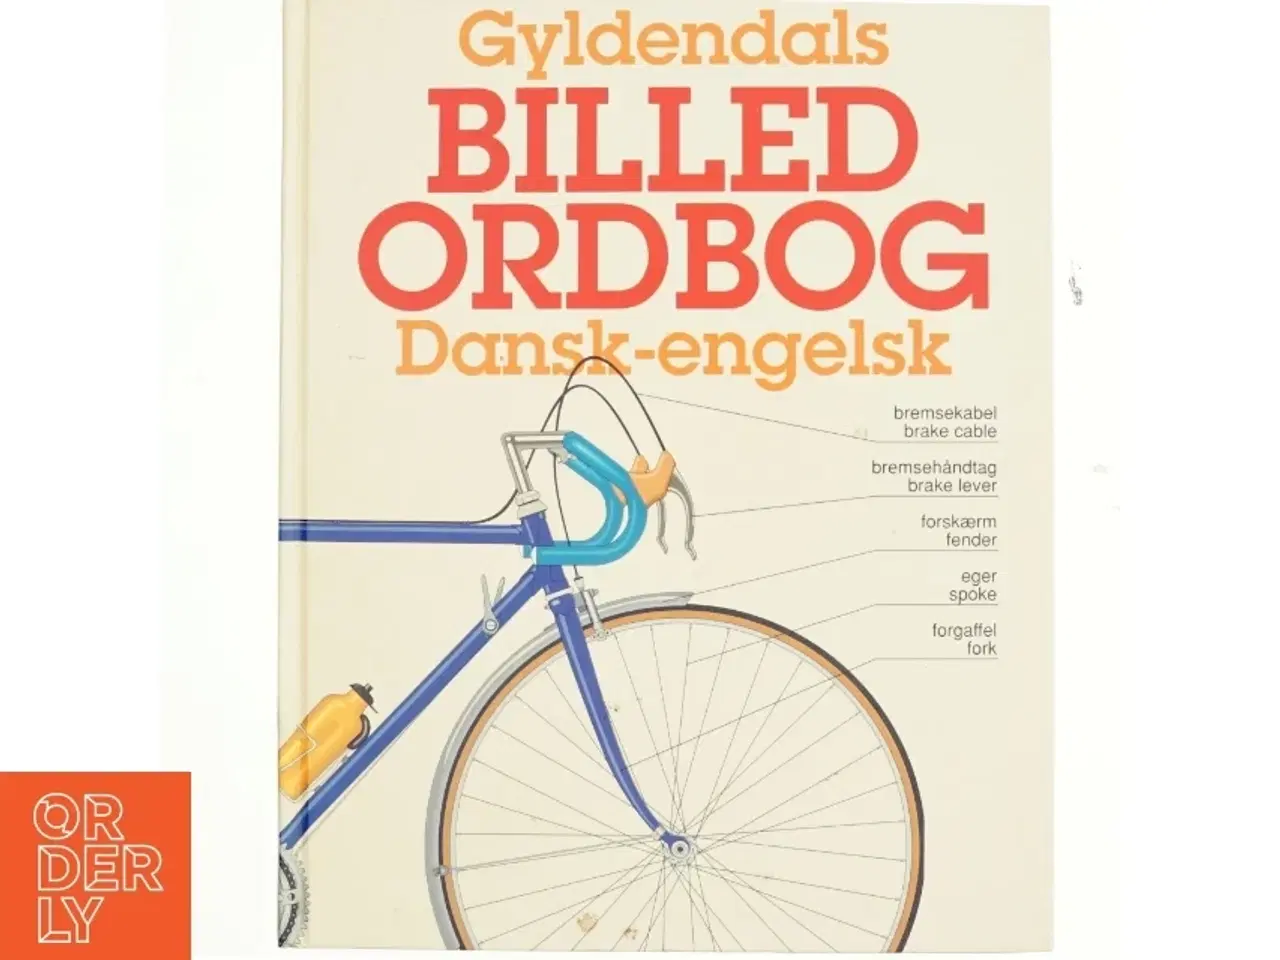 Billede 1 - Billed ordbog, dansk-engelsk fra Gyldendal